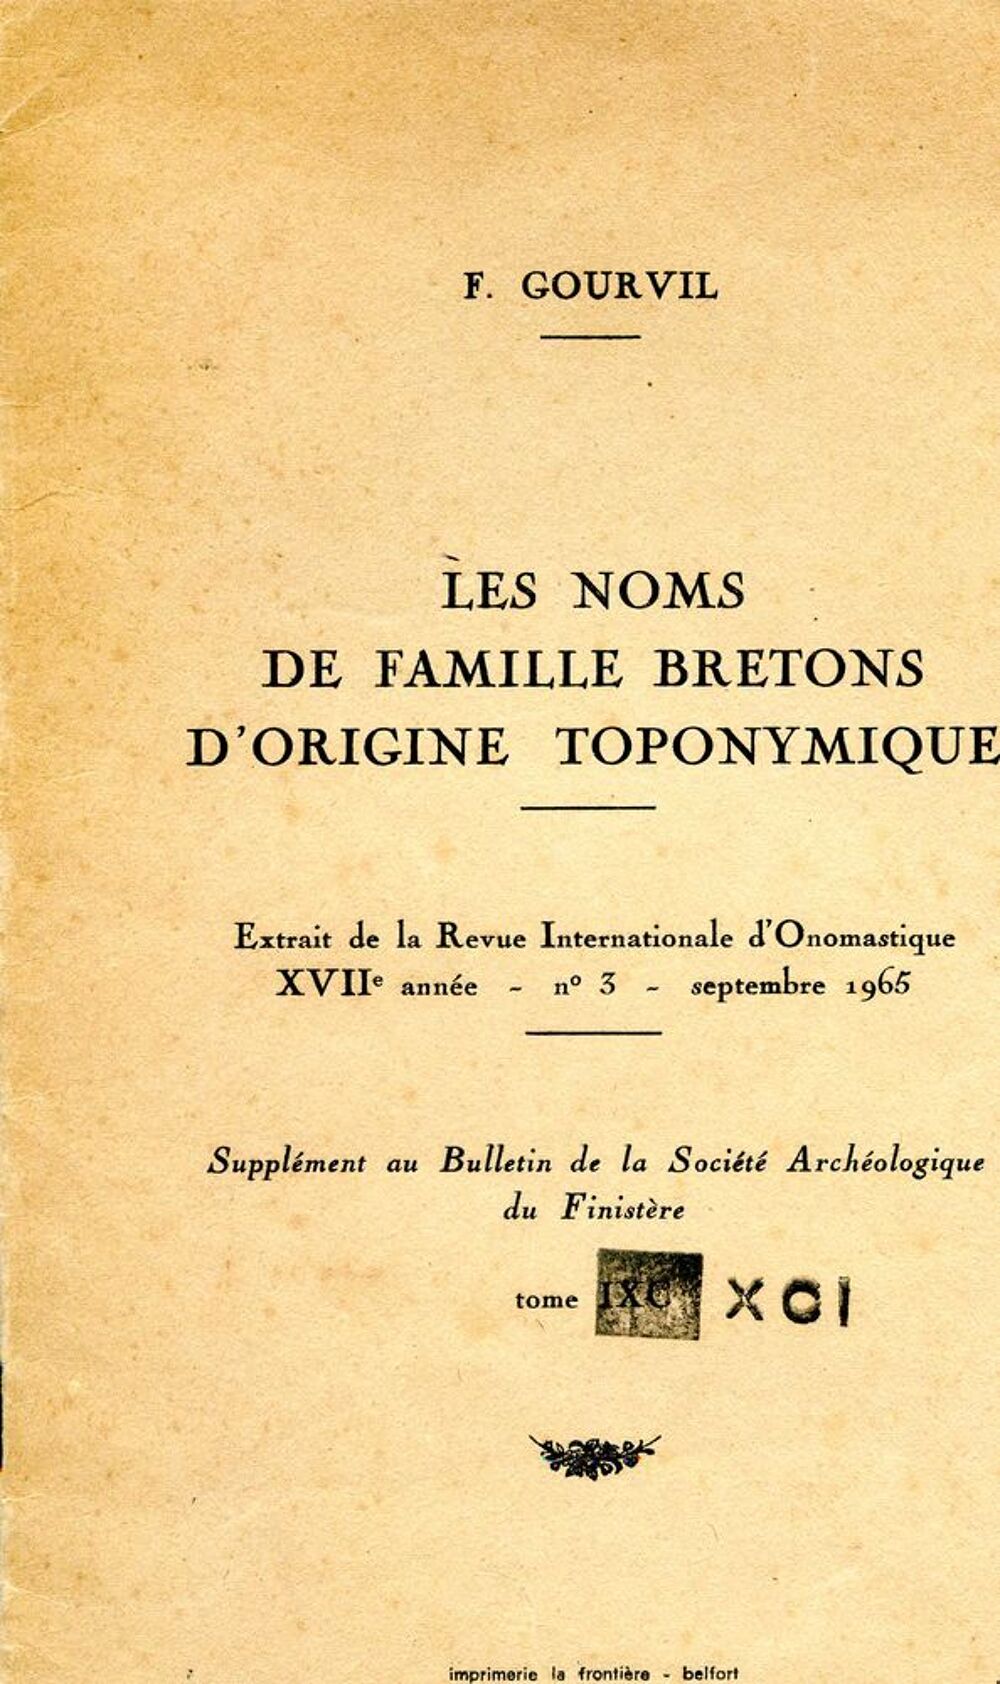 Les noms de famille bretons d'origine toponymique - Gourvil, Livres et BD